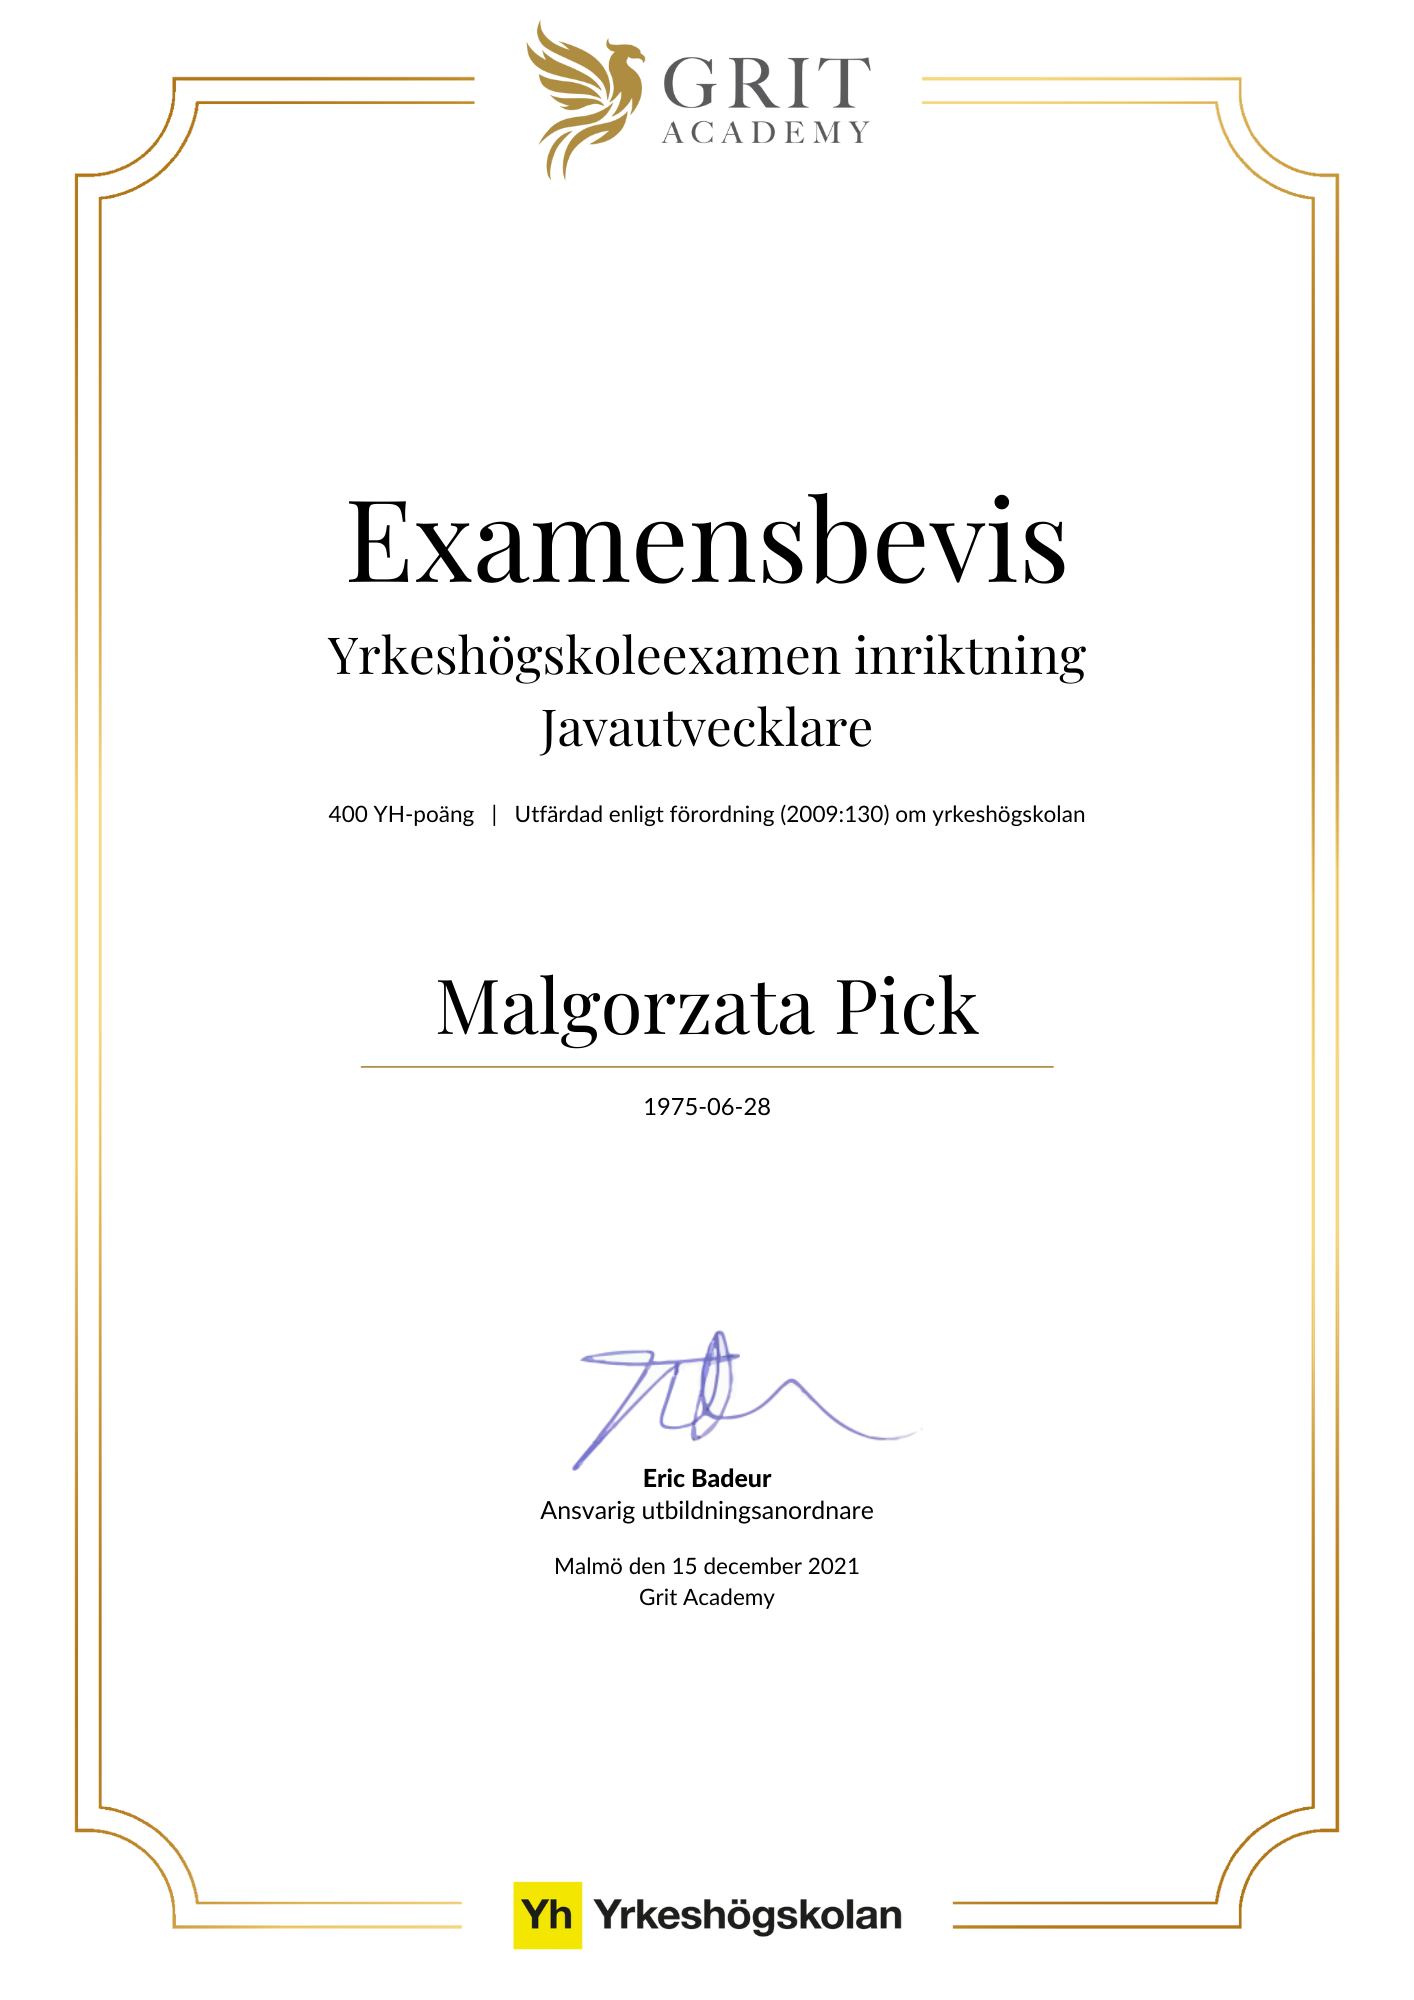 Examensbevis Malgorzata Pick - 1